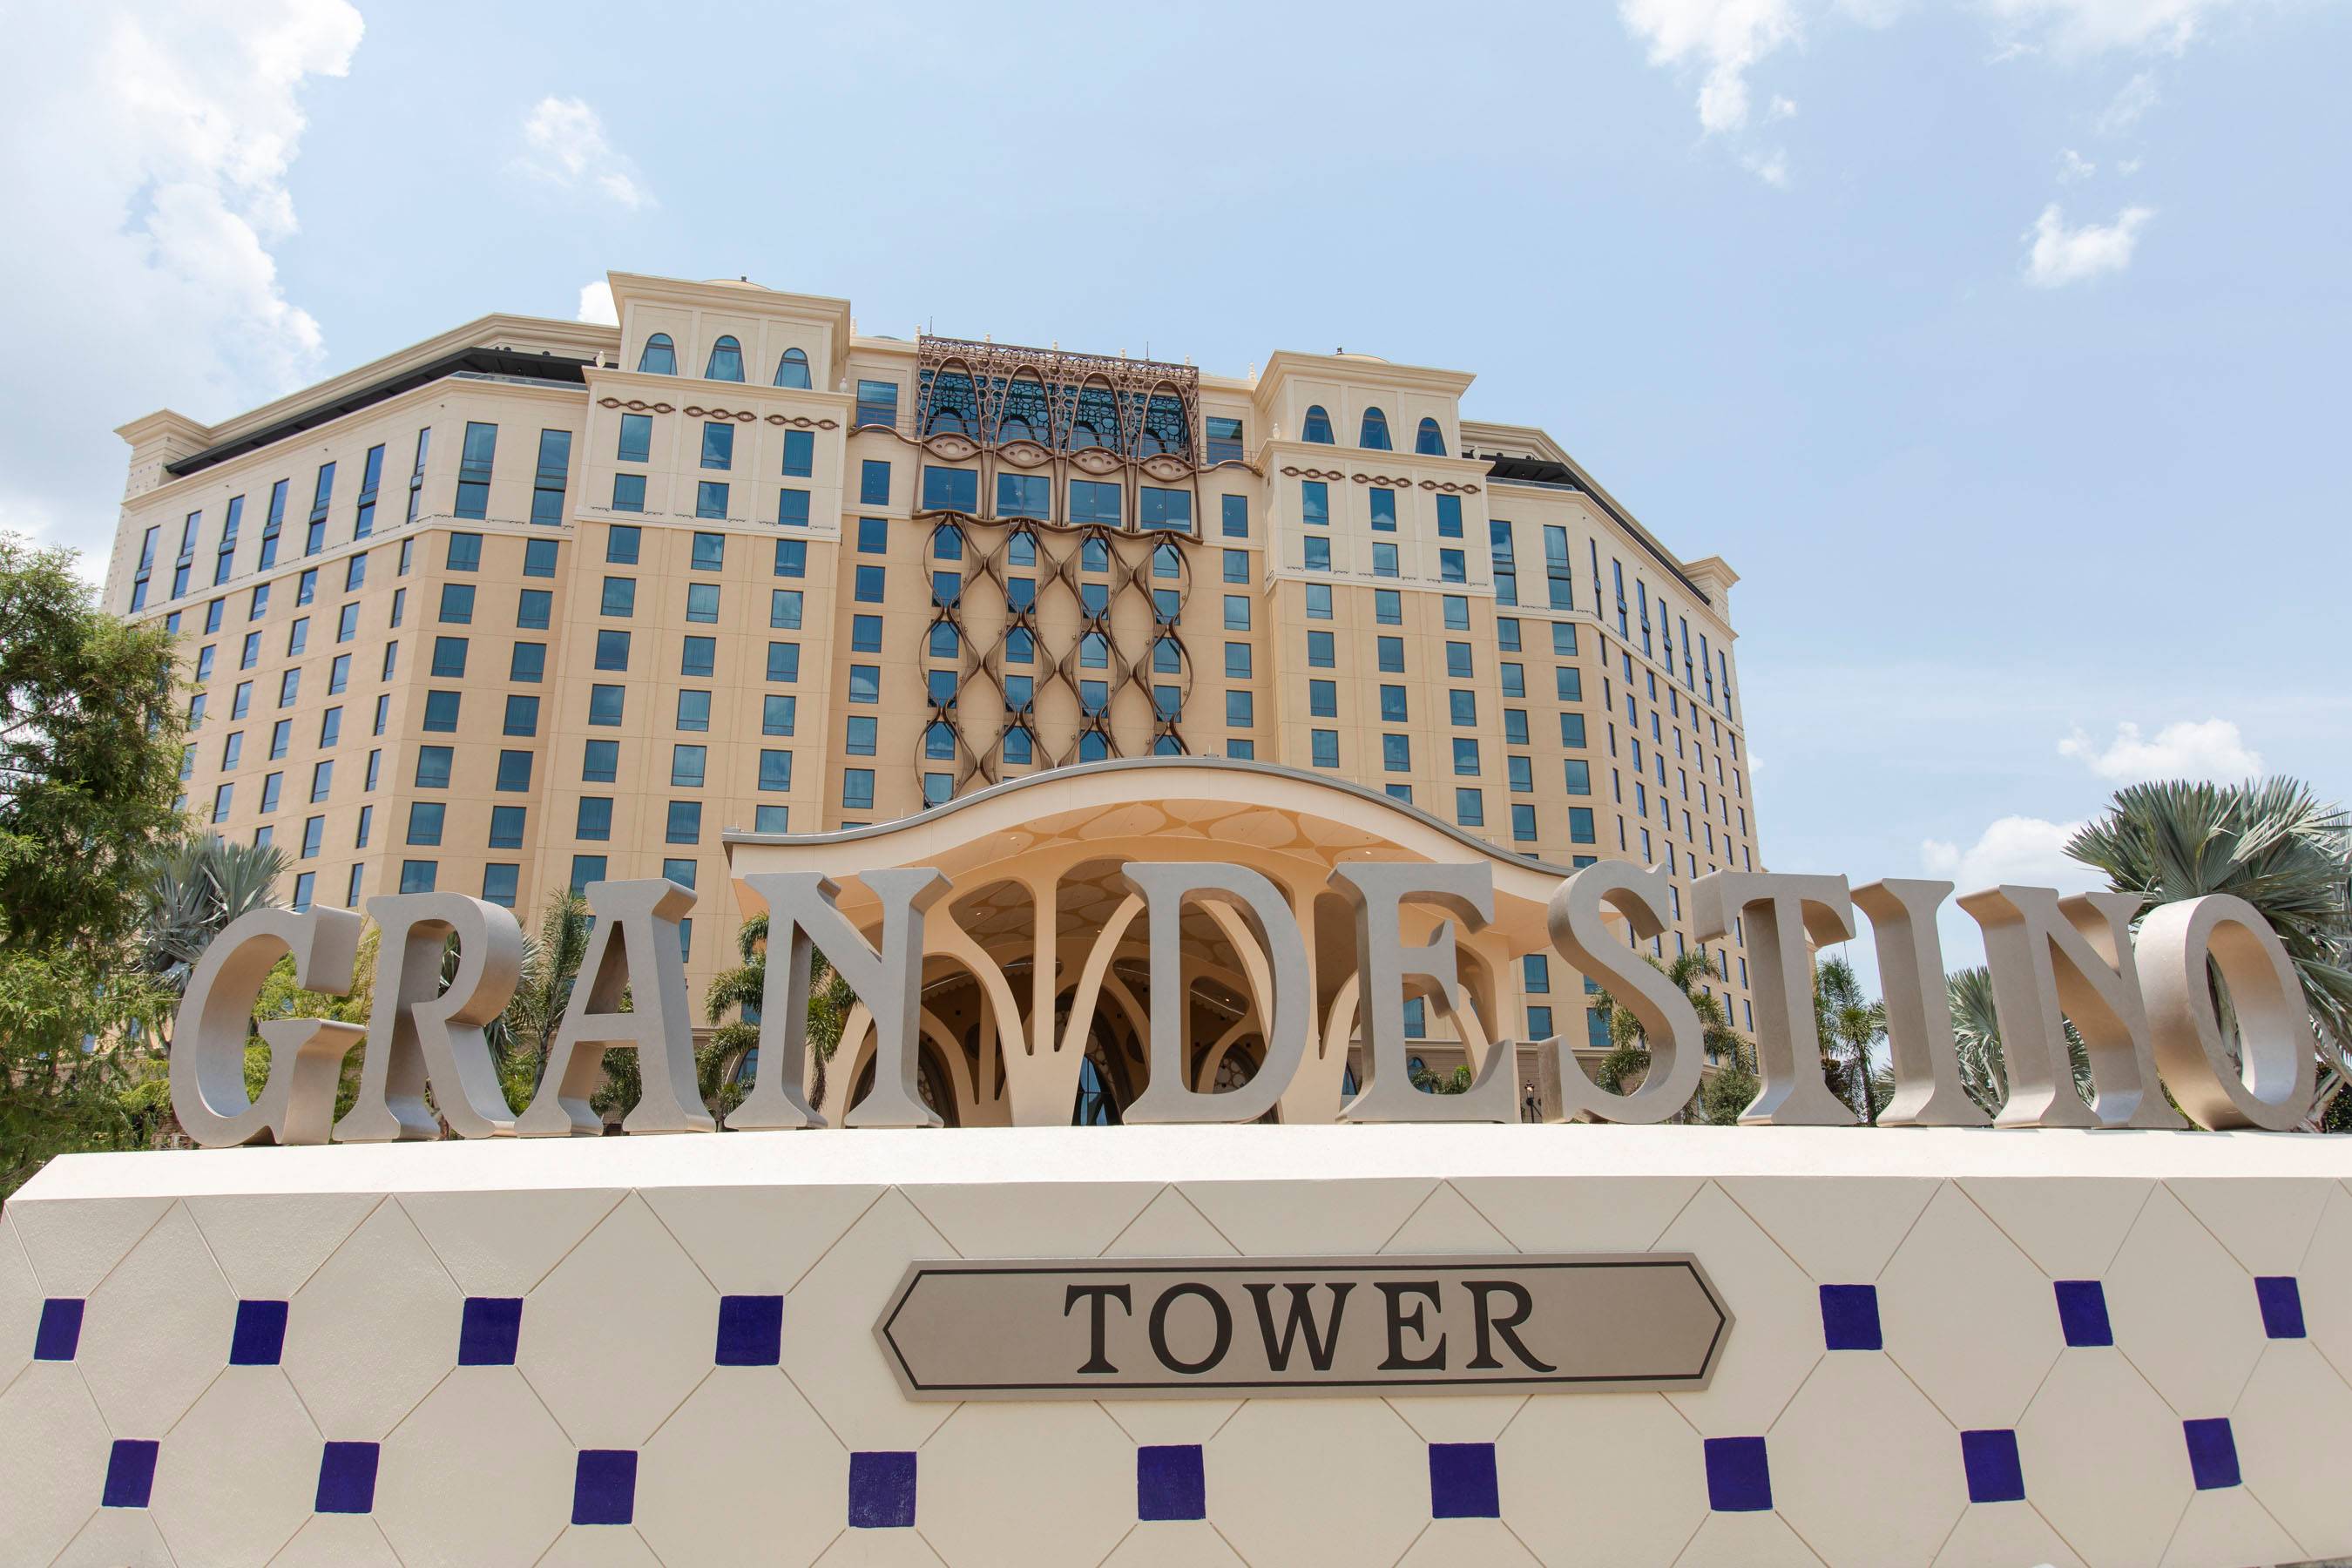 PHOTOS - First look at the new Gran Destino Tower at Disney's Coronado Springs Resort